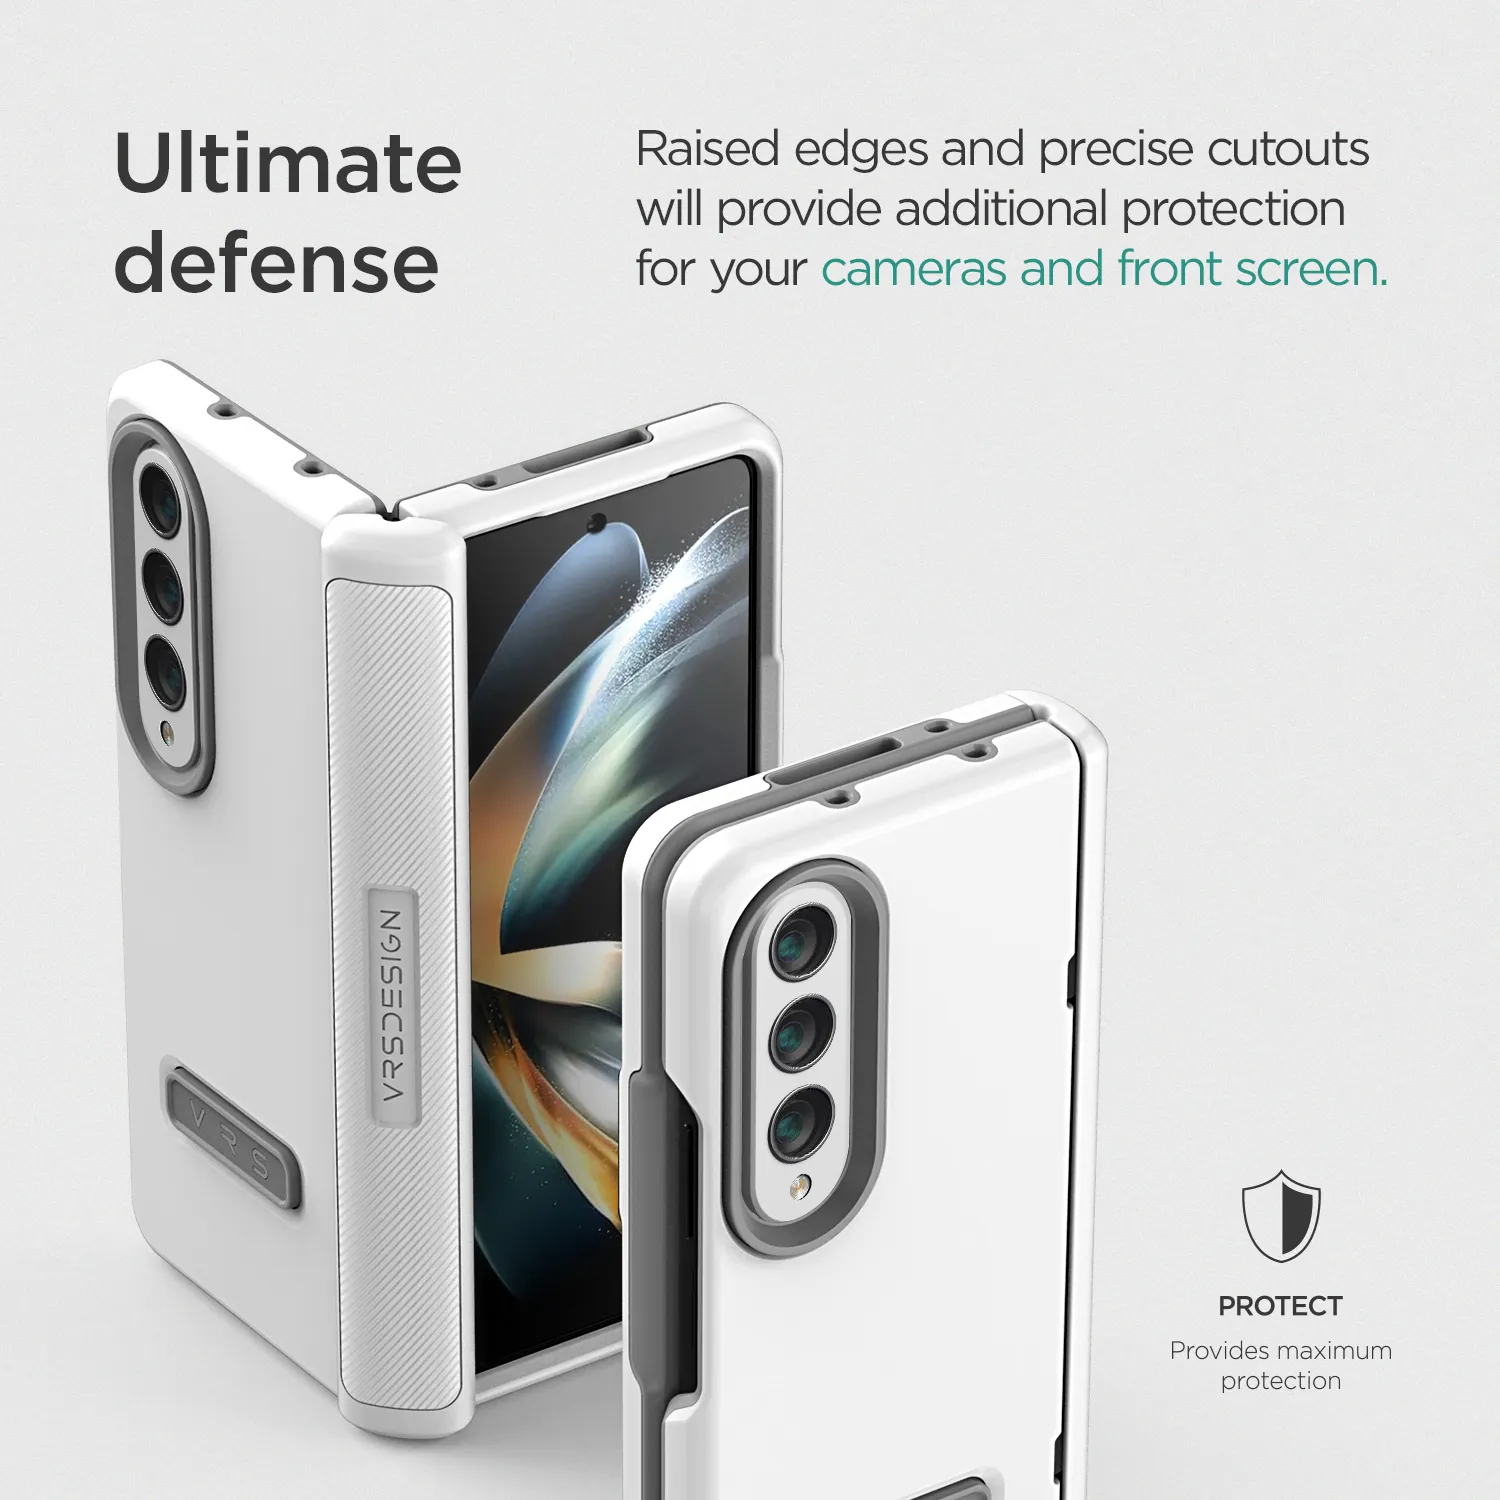 เคส VRS รุ่น Terra Guard Modern - Galaxy Z Fold 4 - สีขาว